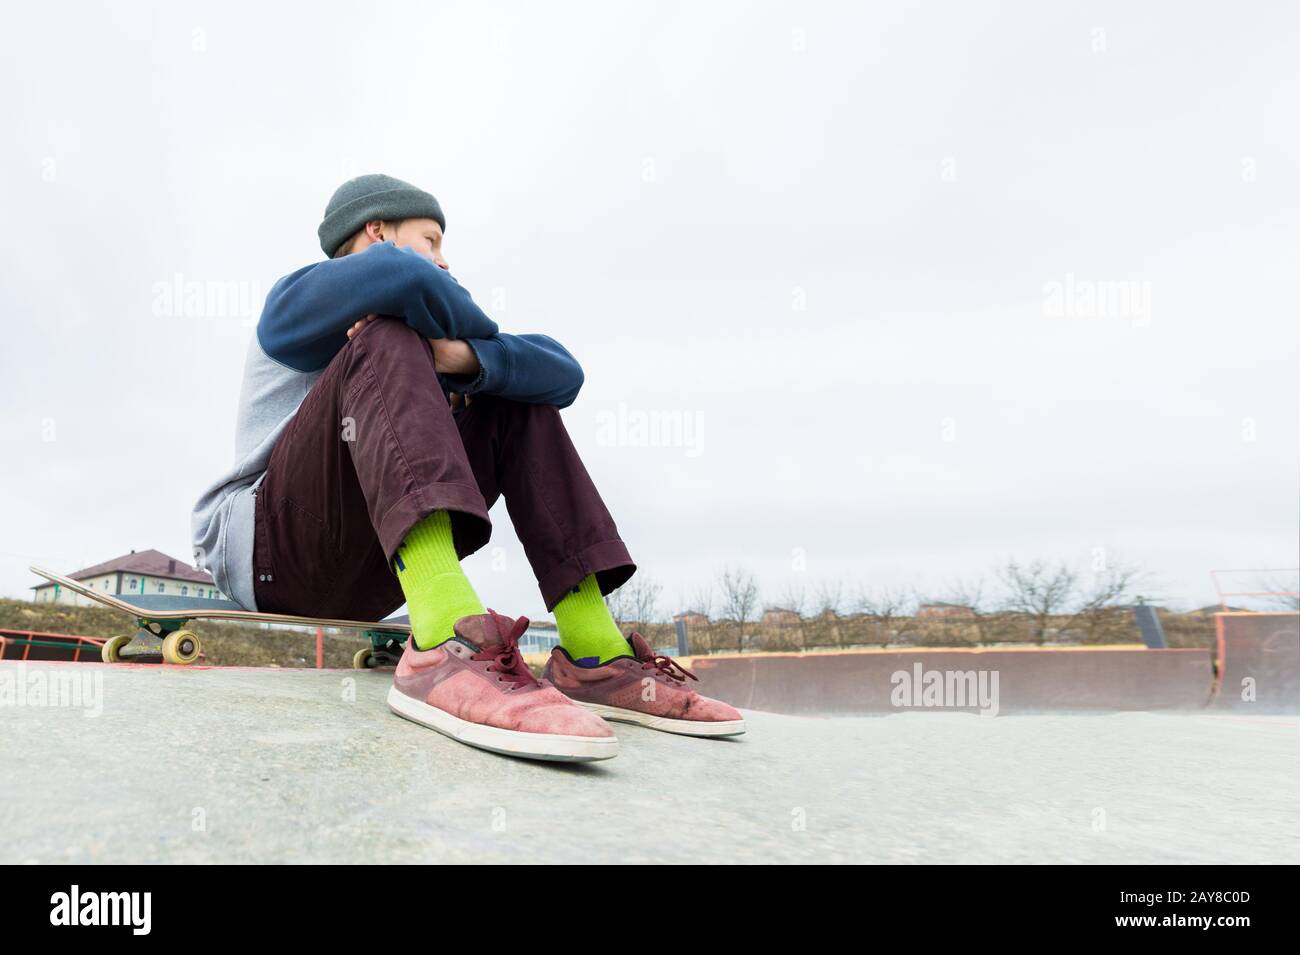 Un adolescent est assis sur un skateboard dans le parc. Le concept de temps libre passe pour les adolescents dans la ville Banque D'Images